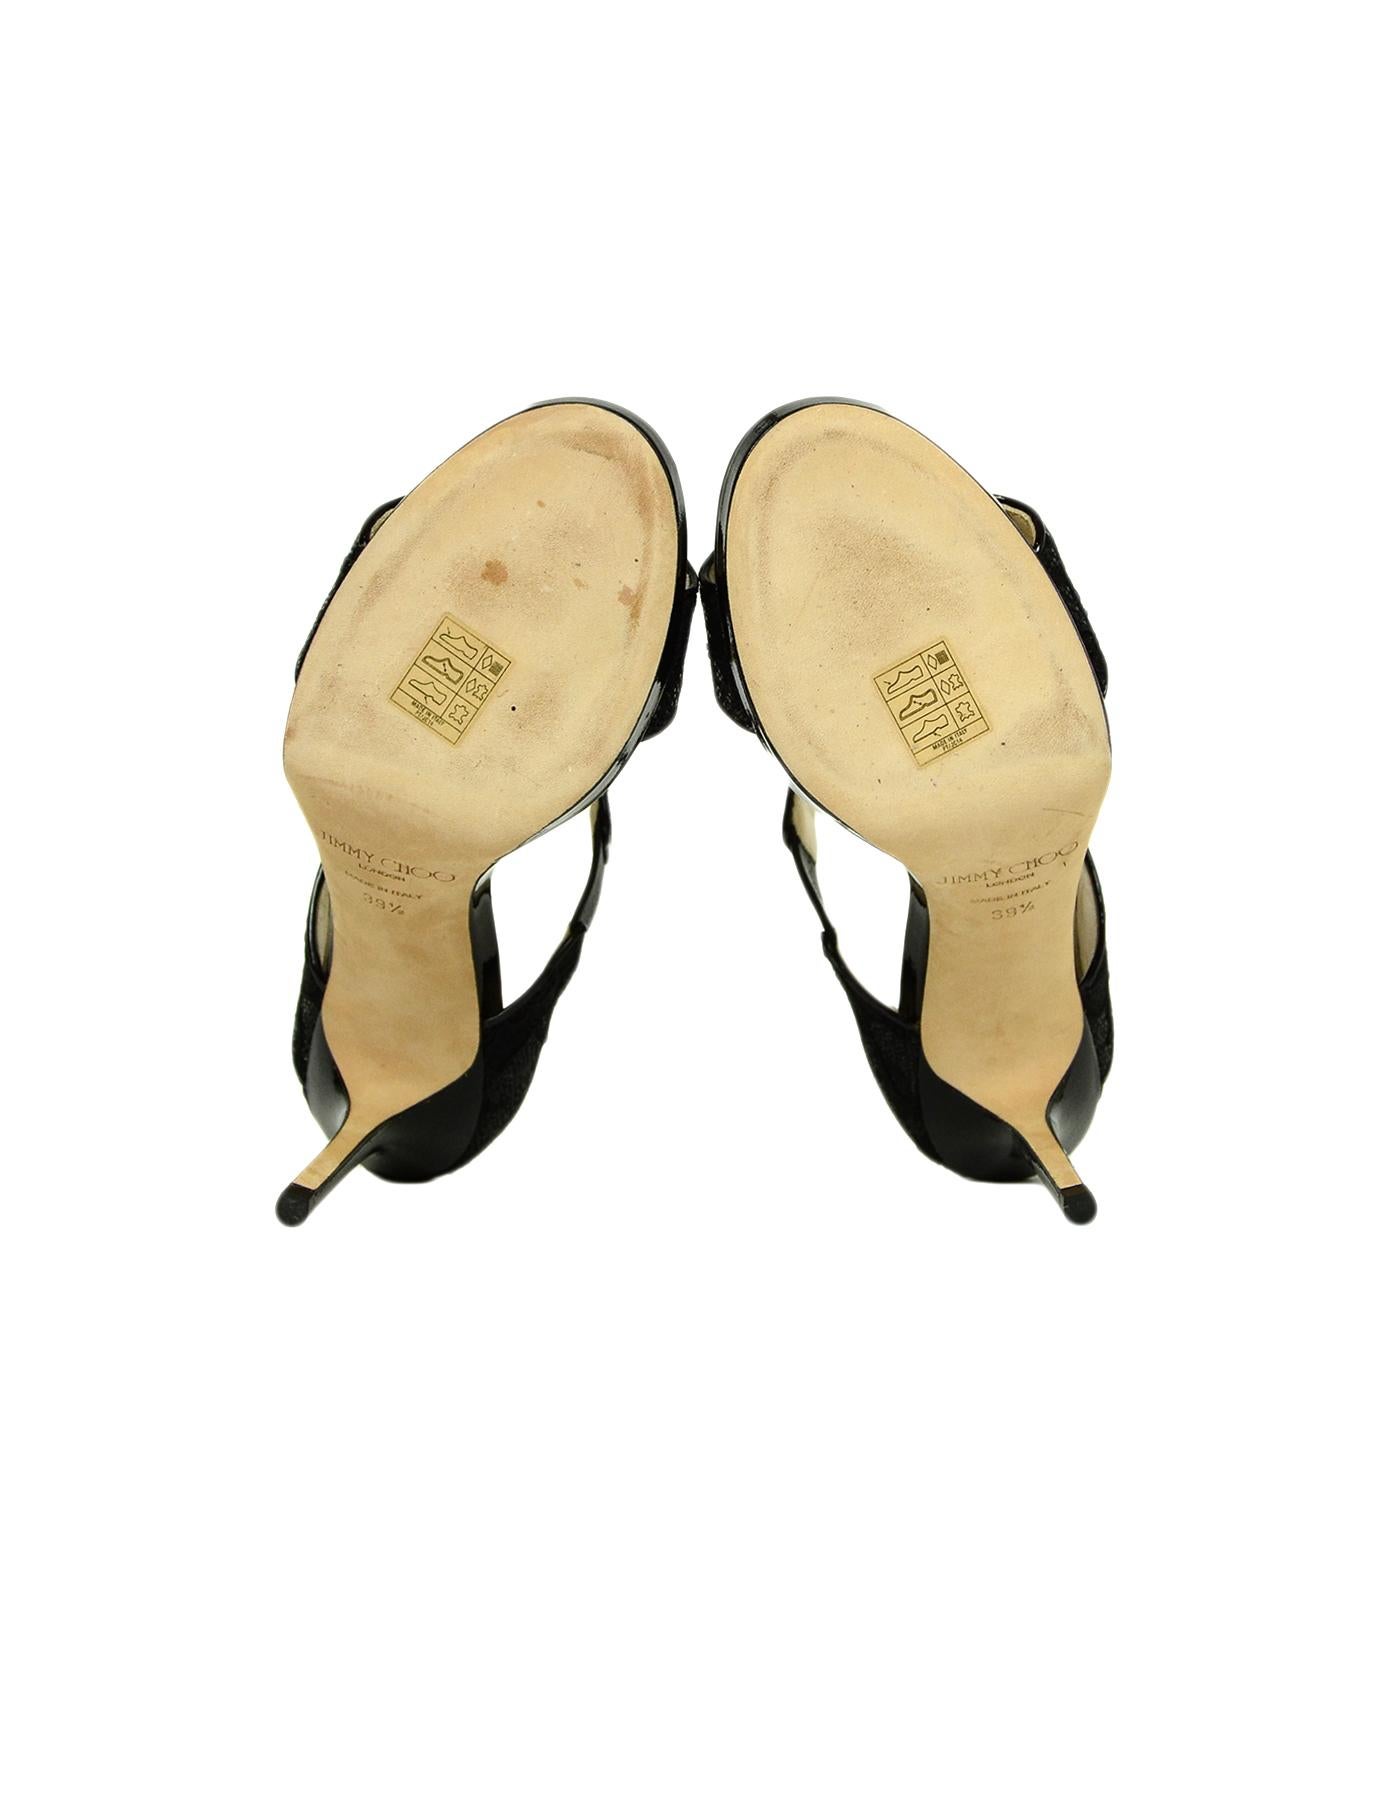 Jimmy Choo Black Glitter Lace Sandals sz 39.5 1